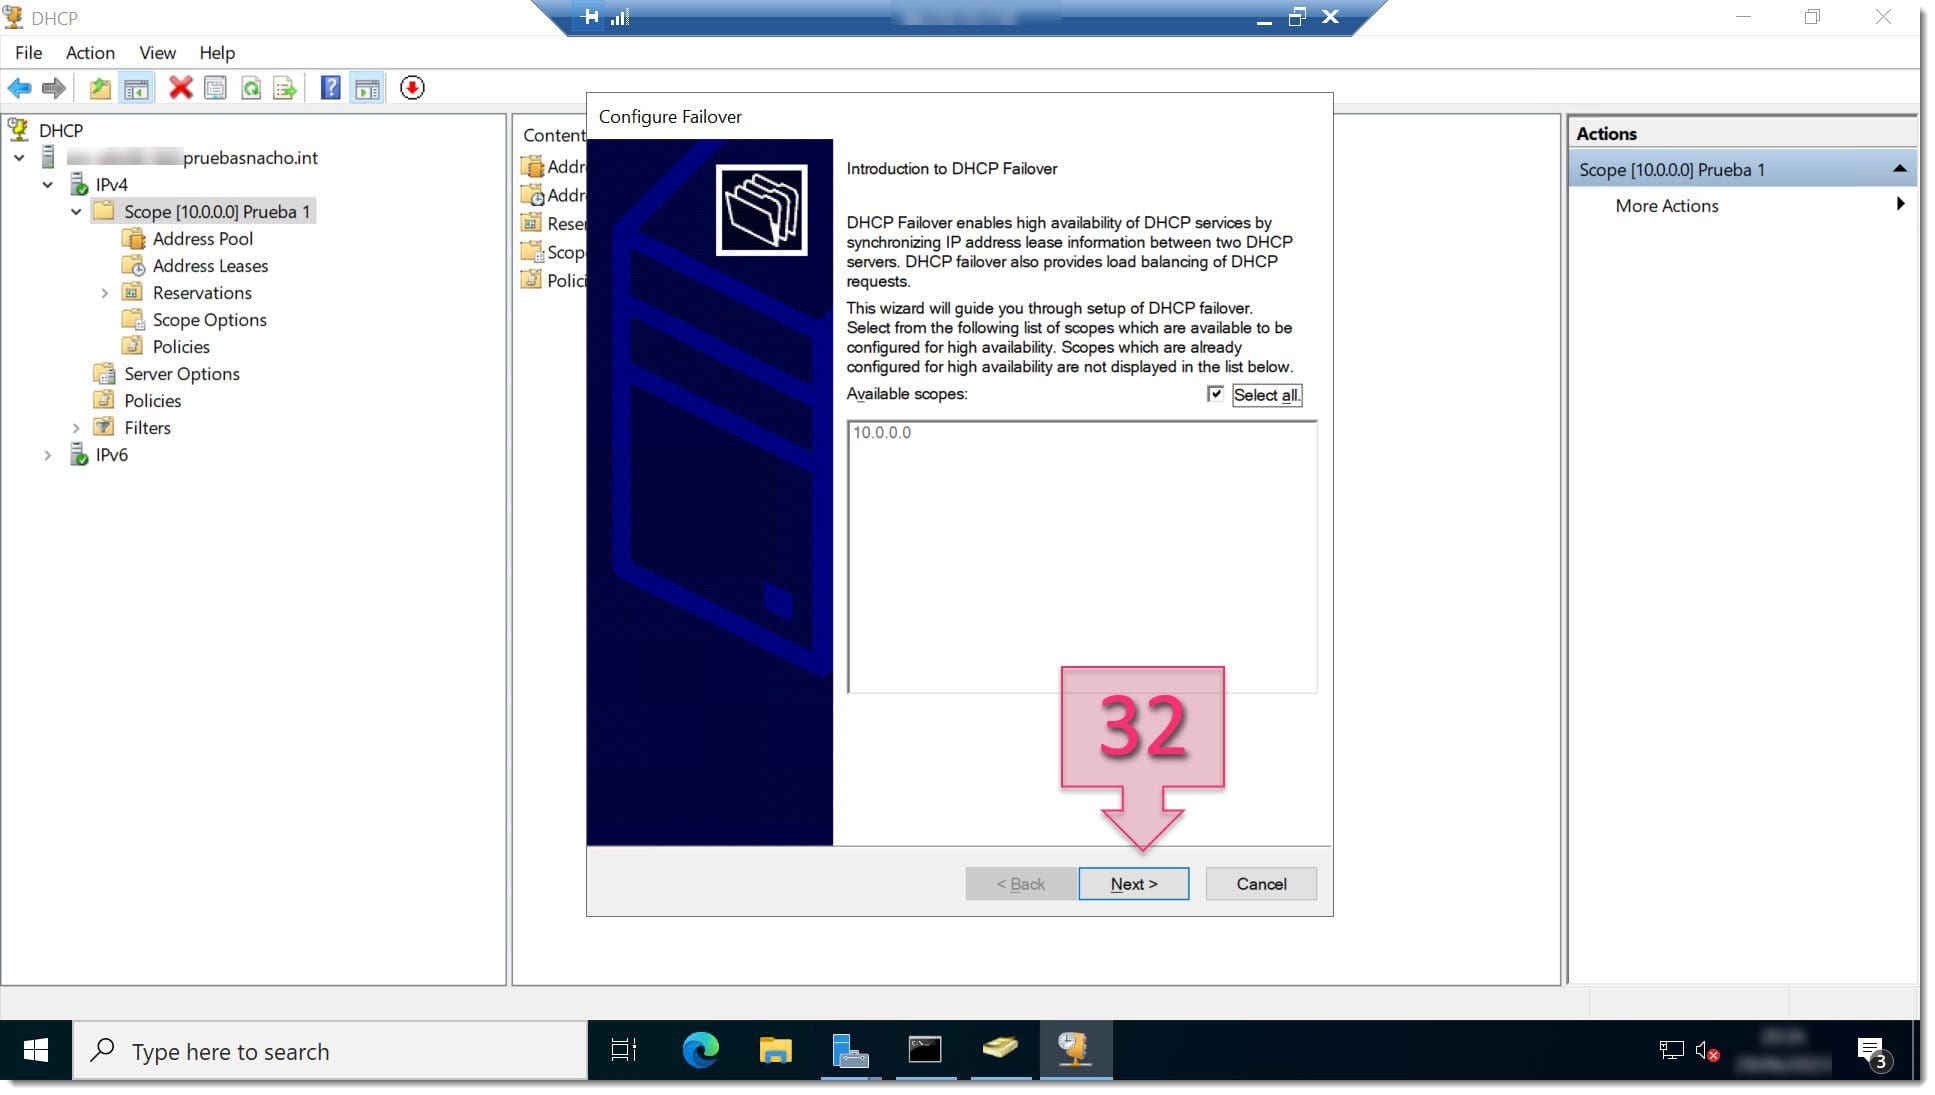 Part 2 - DHCP Configure Failover screen